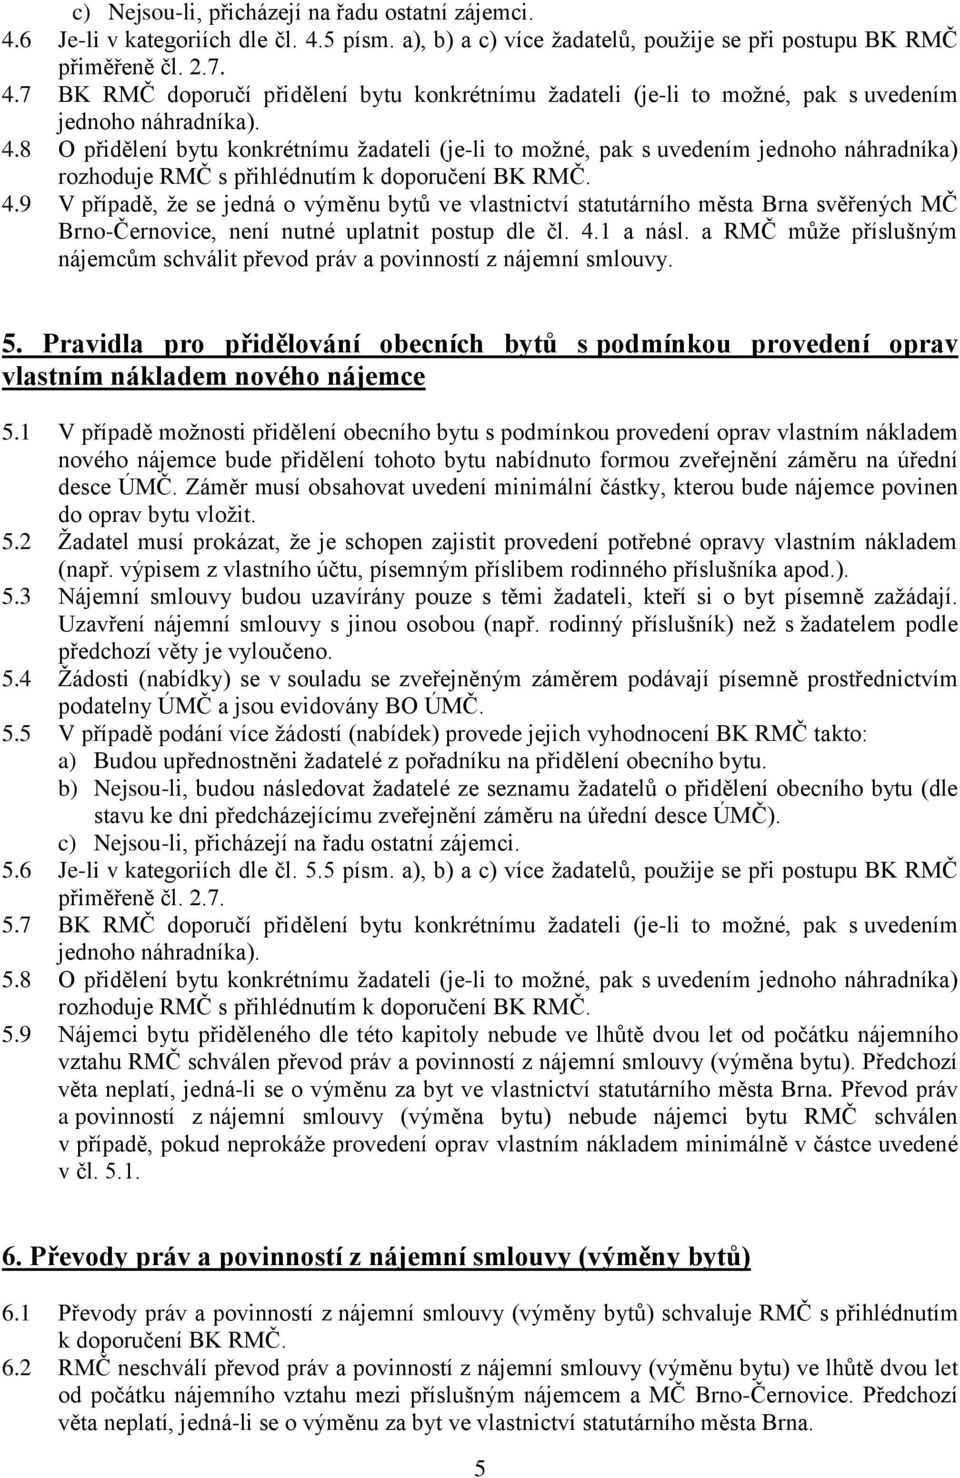 9 V případě, že se jedná o výměnu bytů ve vlastnictví statutárního města Brna svěřených MČ Brno-Černovice, není nutné uplatnit postup dle čl. 4.1 a násl.